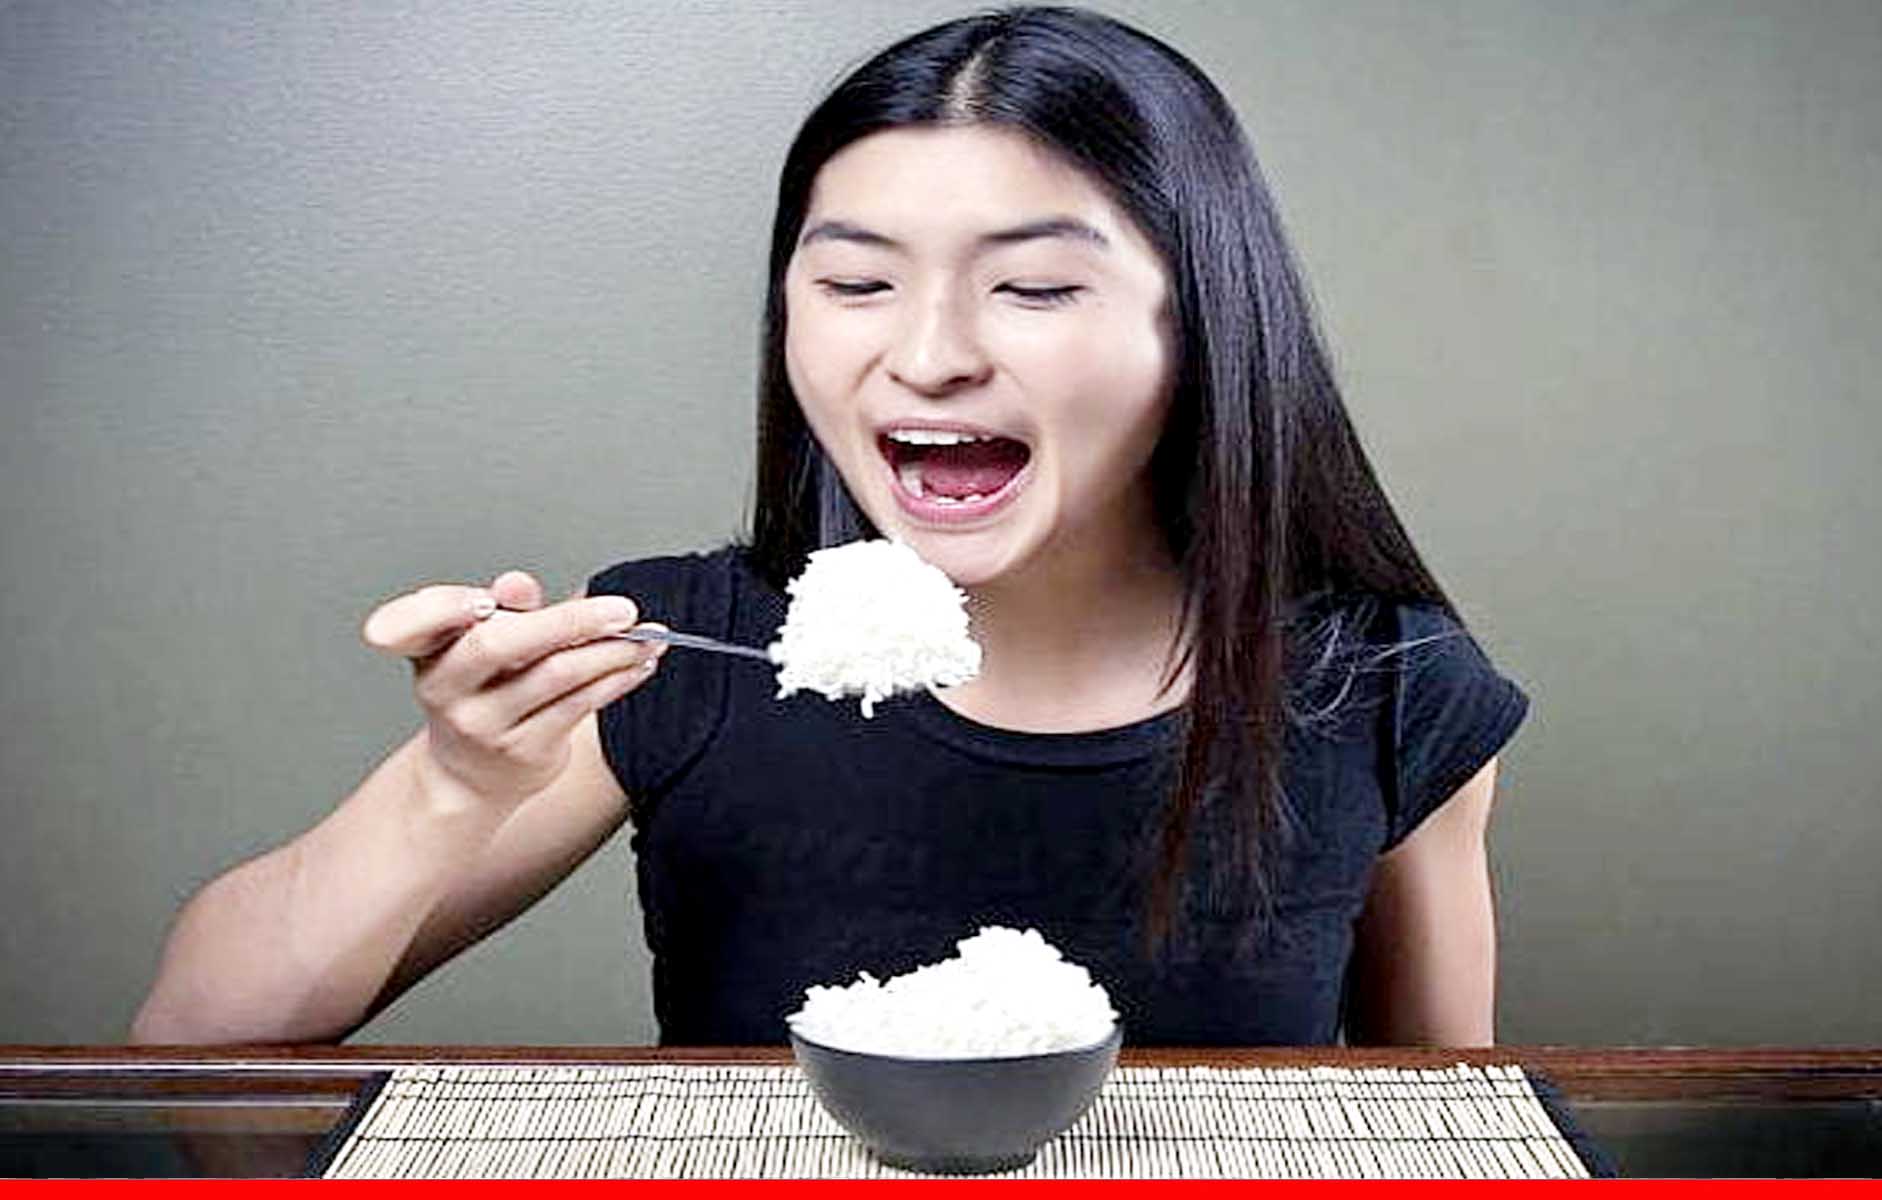 चावल को ठीक से नहीं पकाने से हो सकता है कैंसर : स्टडी 